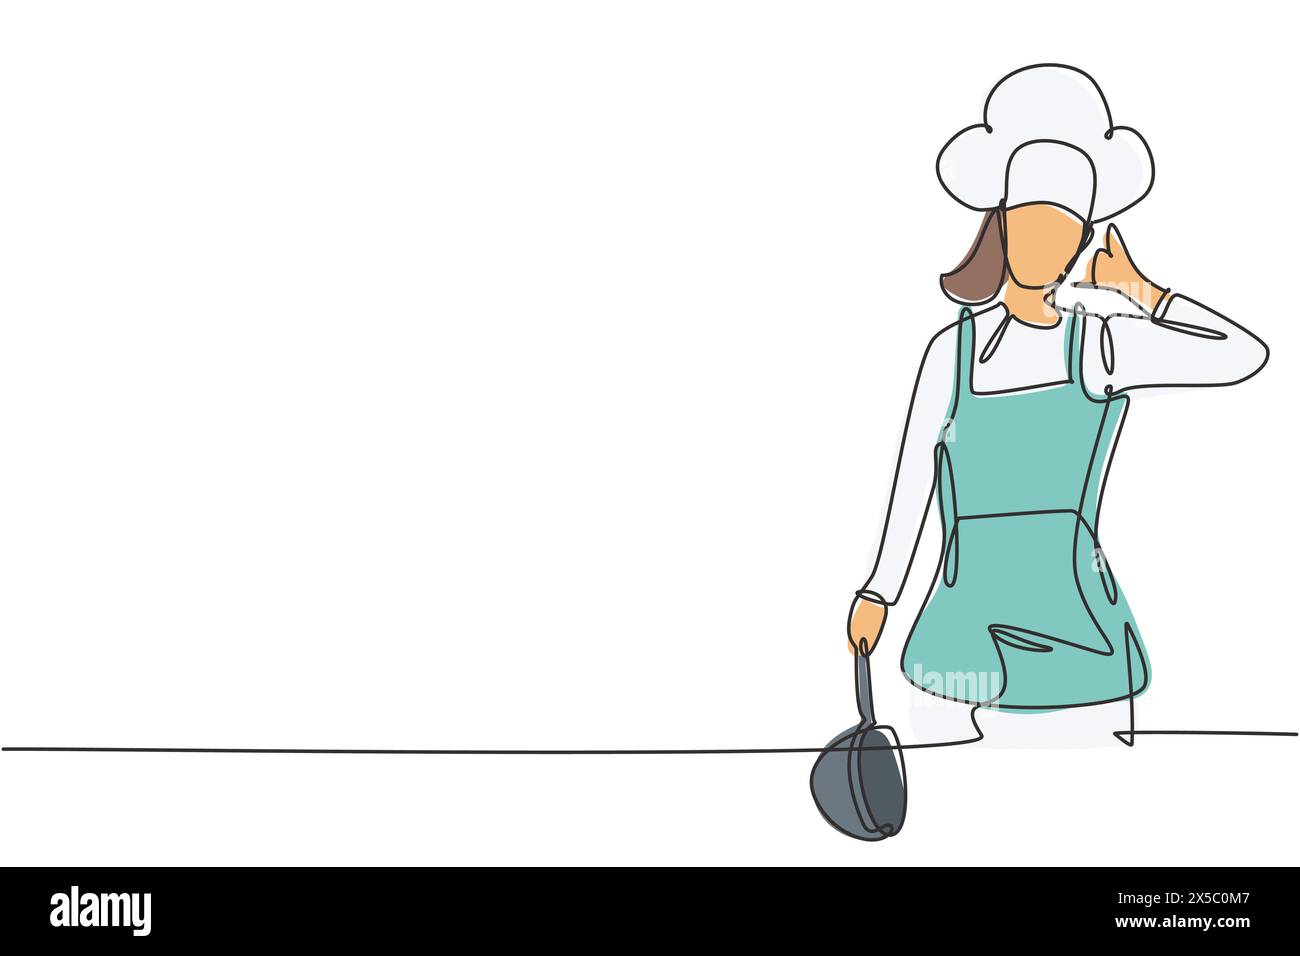 Une ligne continue dessinant une femme chef avec le geste appelez-moi, tenant la casserole et portant des uniformes de cuisine prêts à cuisiner les repas pour les clients du restaurant. Péché Illustration de Vecteur